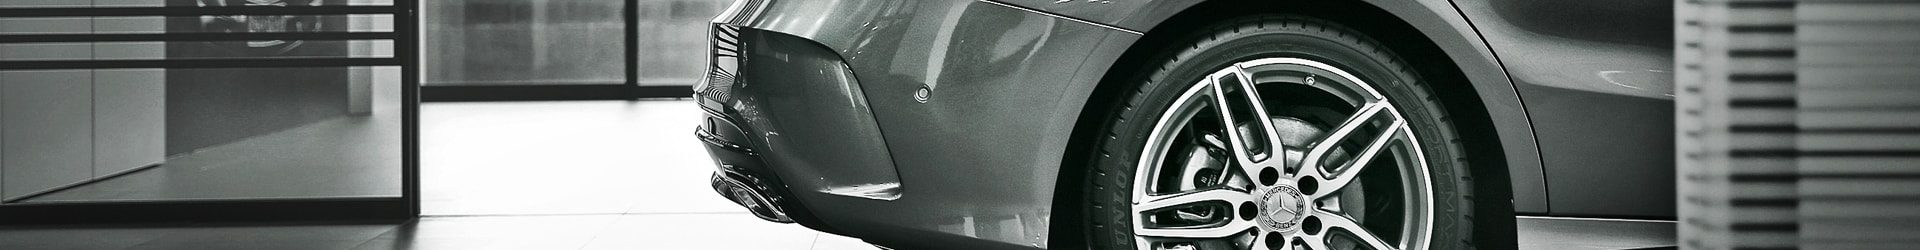 –極度騷包– Porsche 保時捷 981 Boxster S 閃黃開箱拍攝